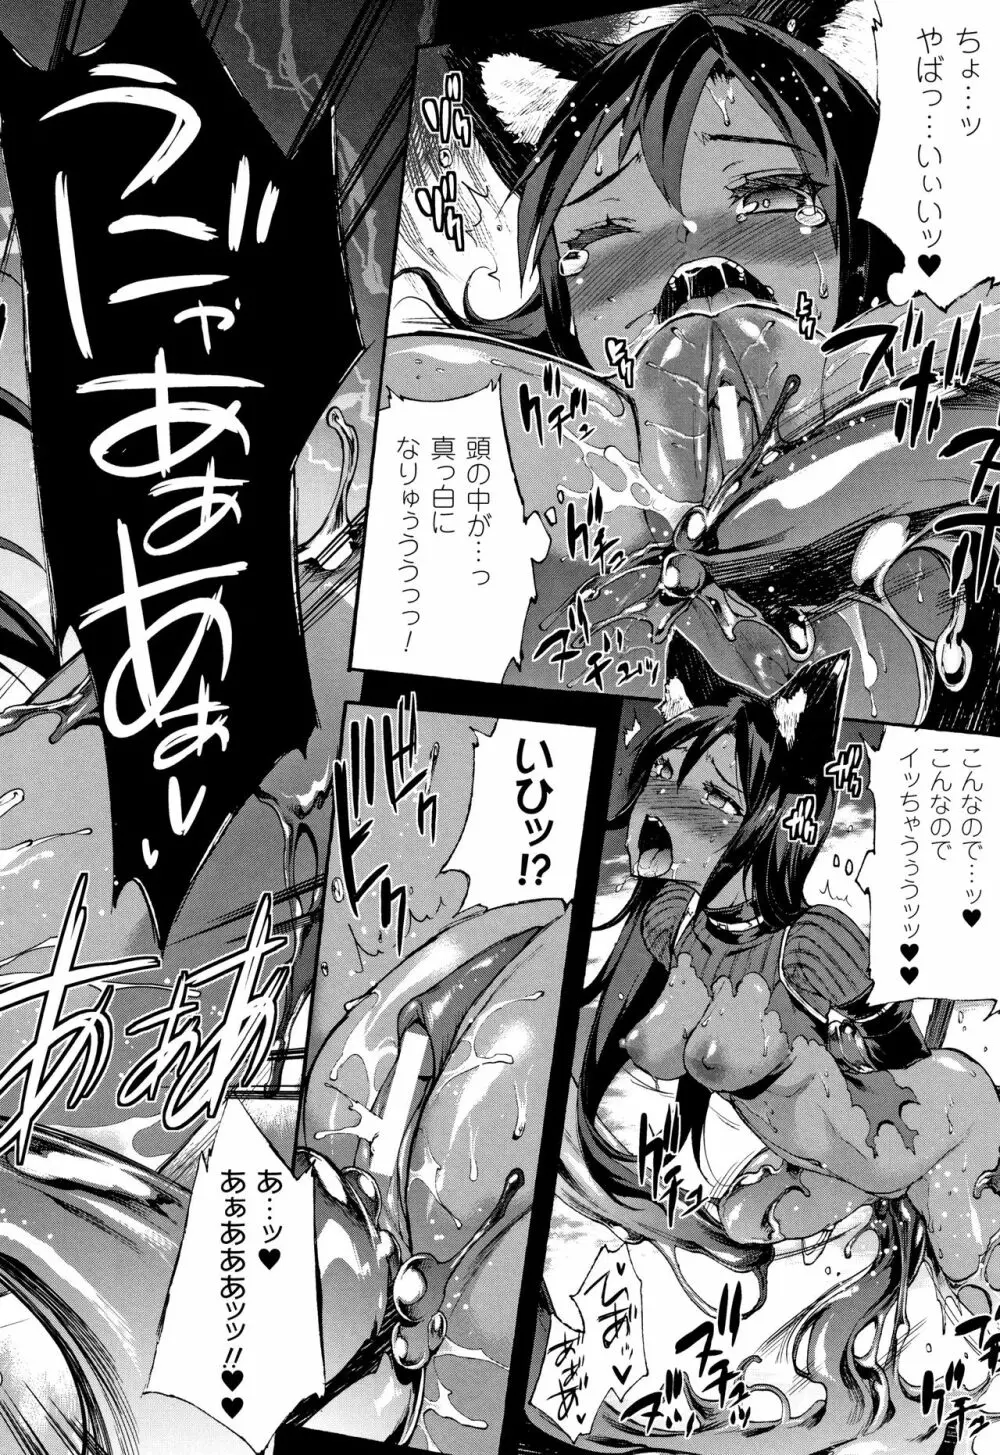 [エレクトさわる] 雷光神姫アイギスマギア II -PANDRA saga 3rd ignition- + 4Pリーフレット 15ページ